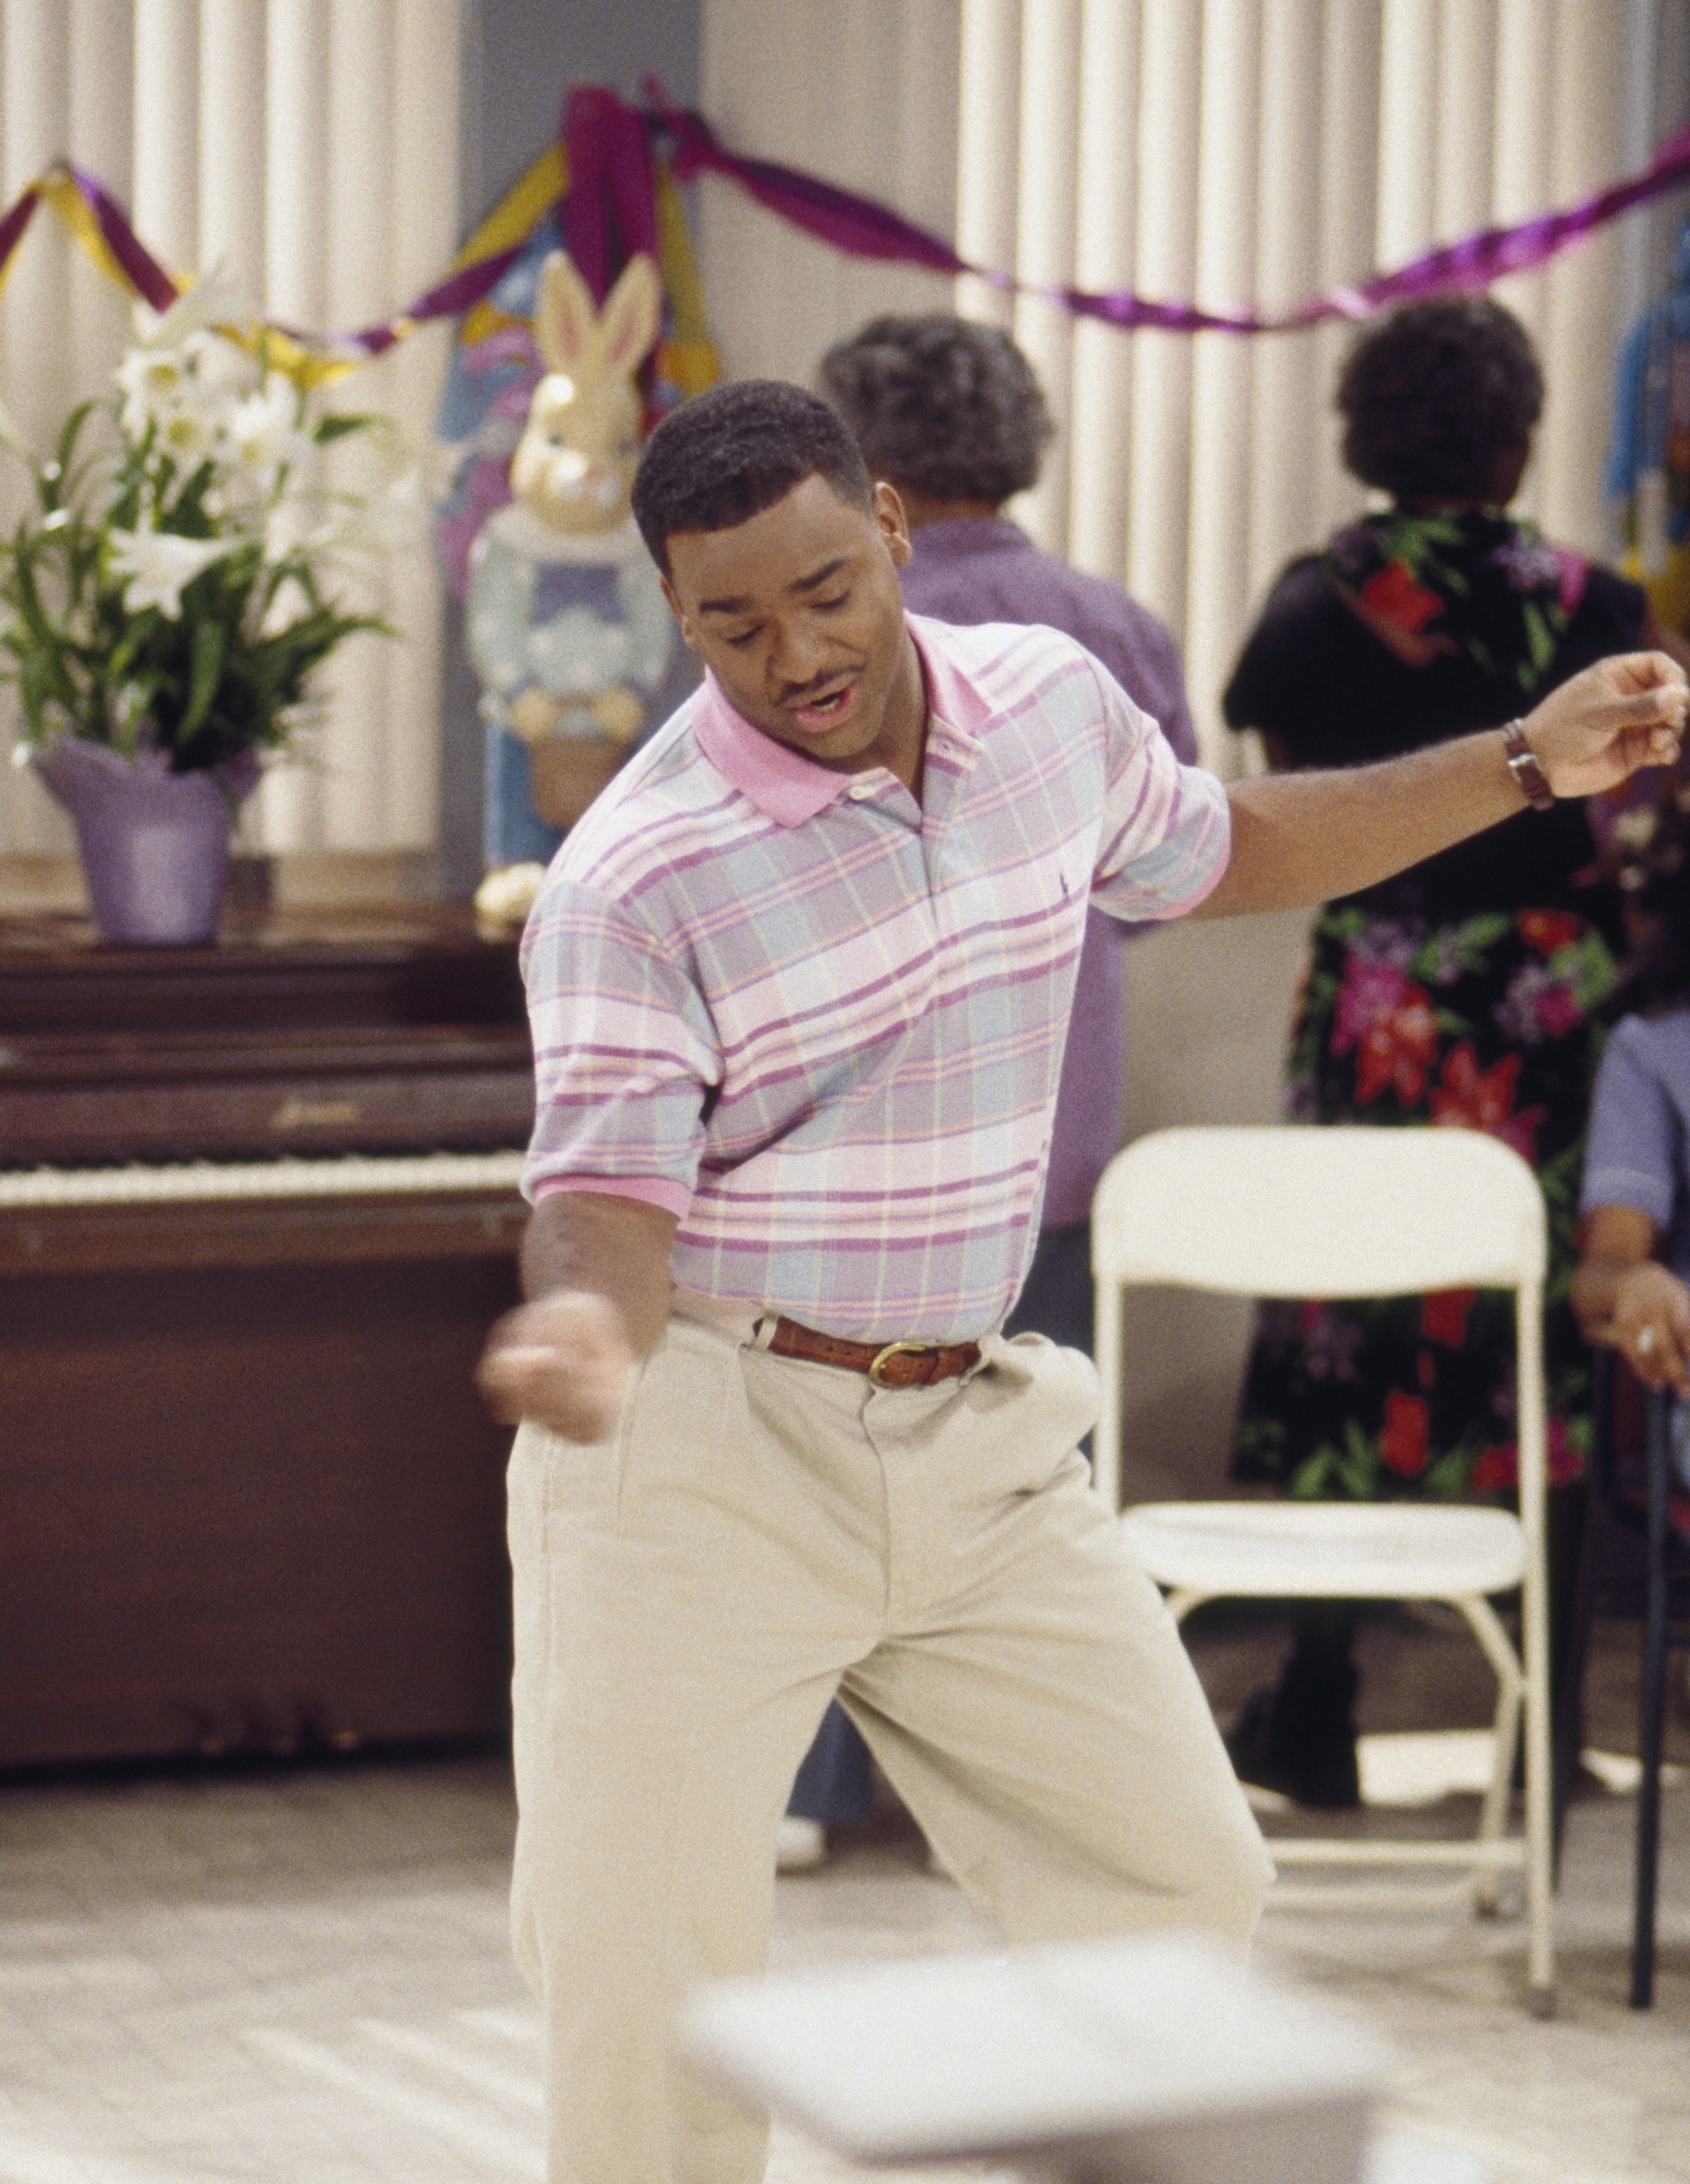 Carlton dancing